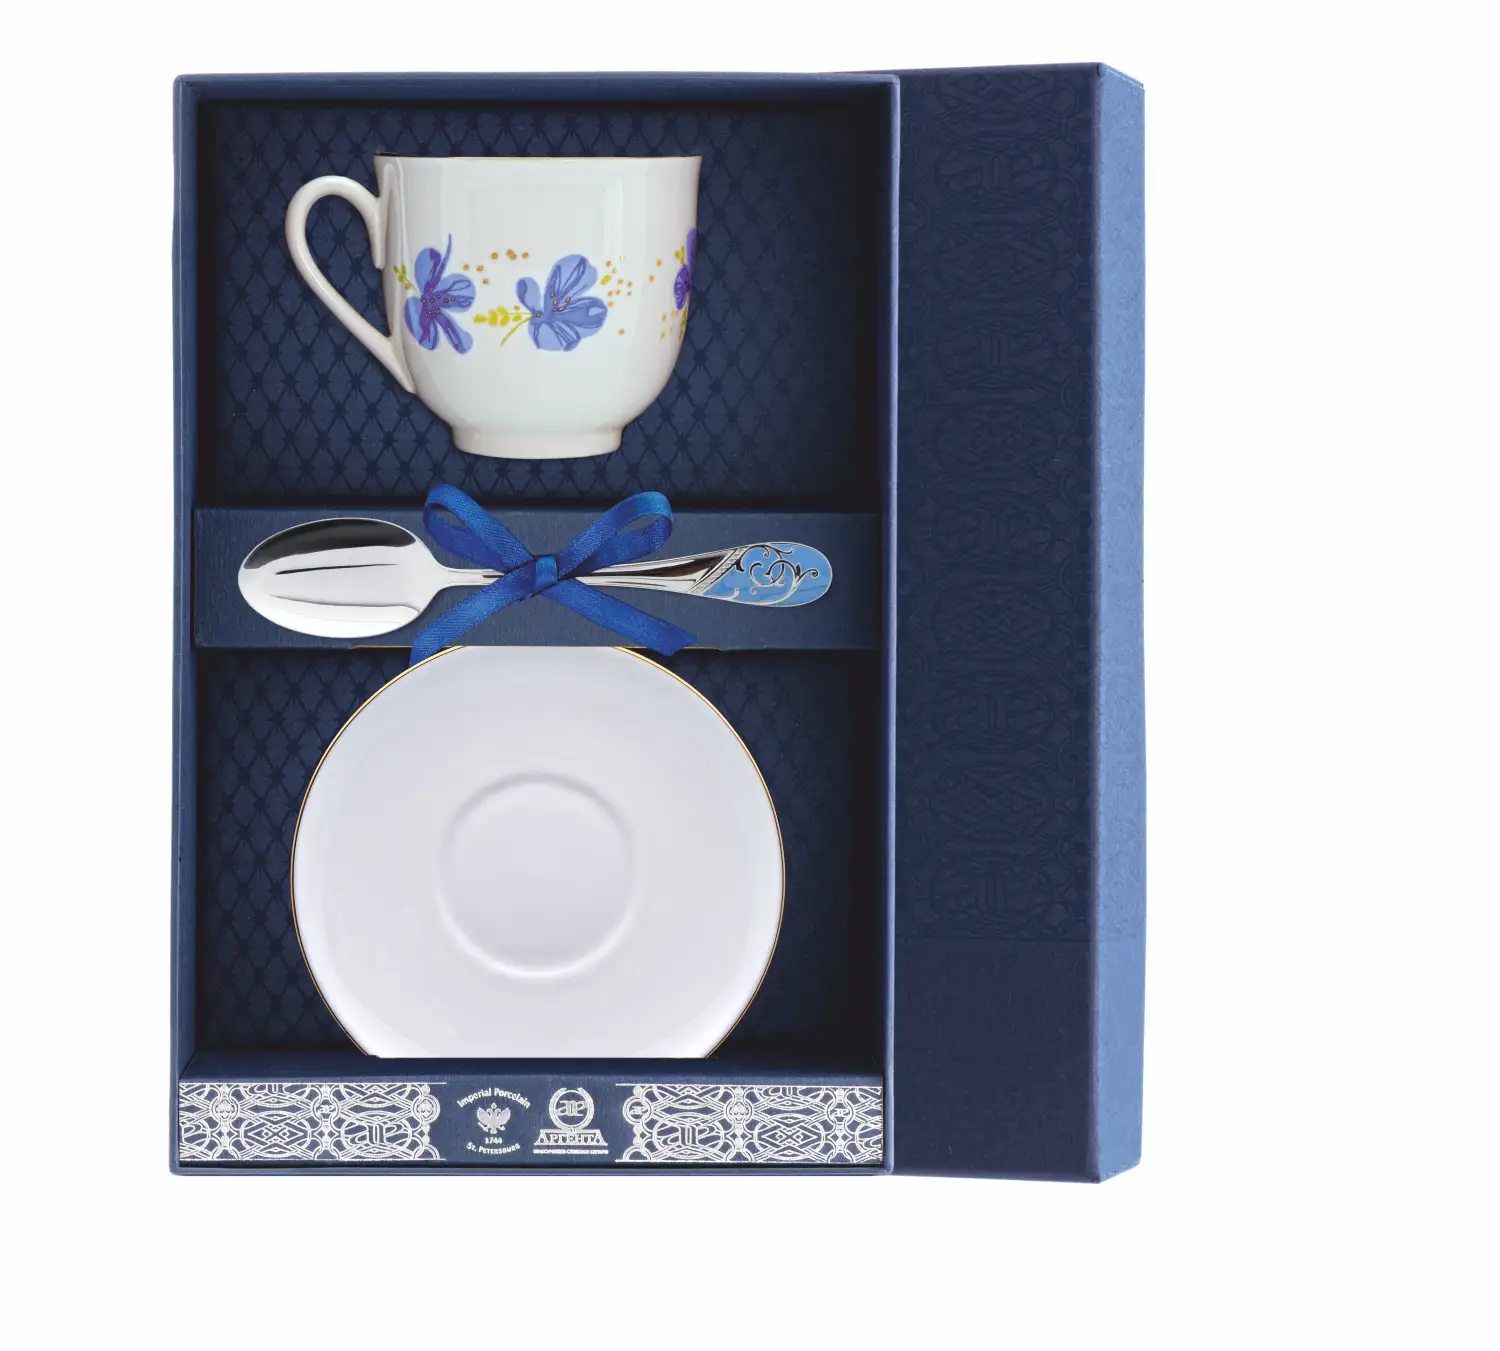 Набор чайный Ландыш - Голубые цветы: блюдце, ложка, чашка (Серебро 925) набор чайный ландыш желтые цветы ложка рамка для фото чашка серебро 925